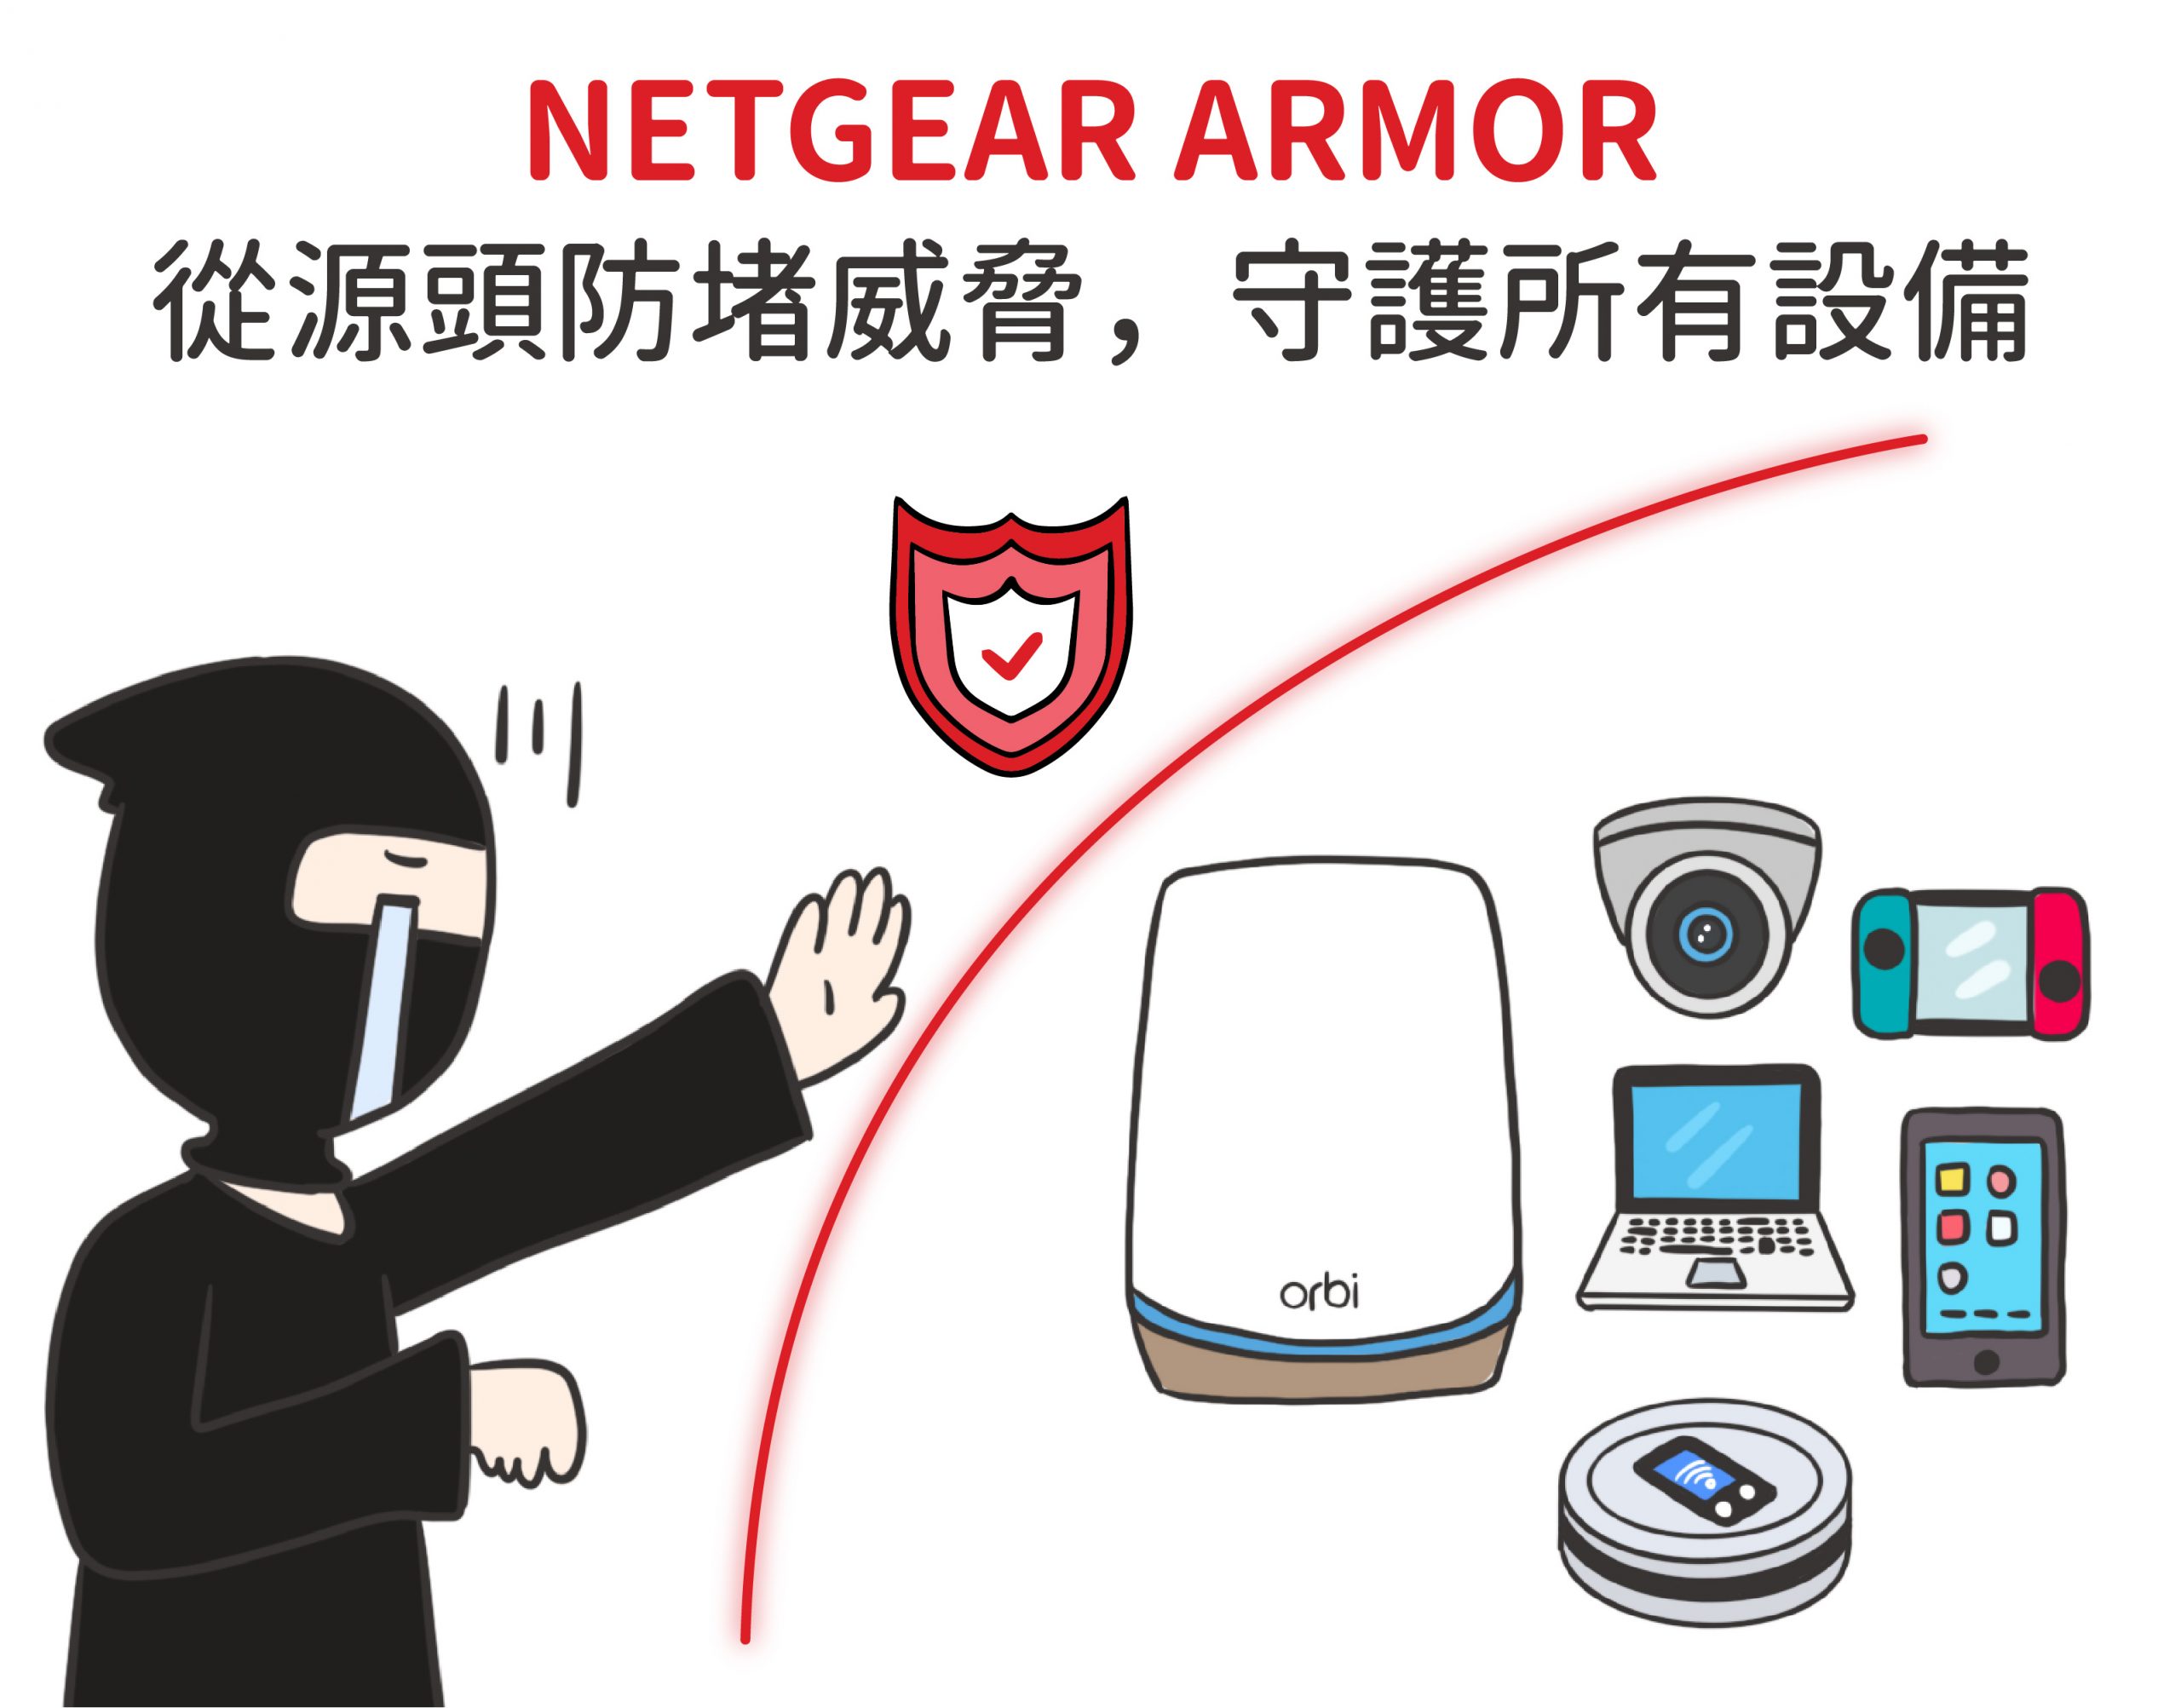 NETGEAR ARMOR 安裝在路由器之內，從網路源頭防堵威脅，一次守護所有設備